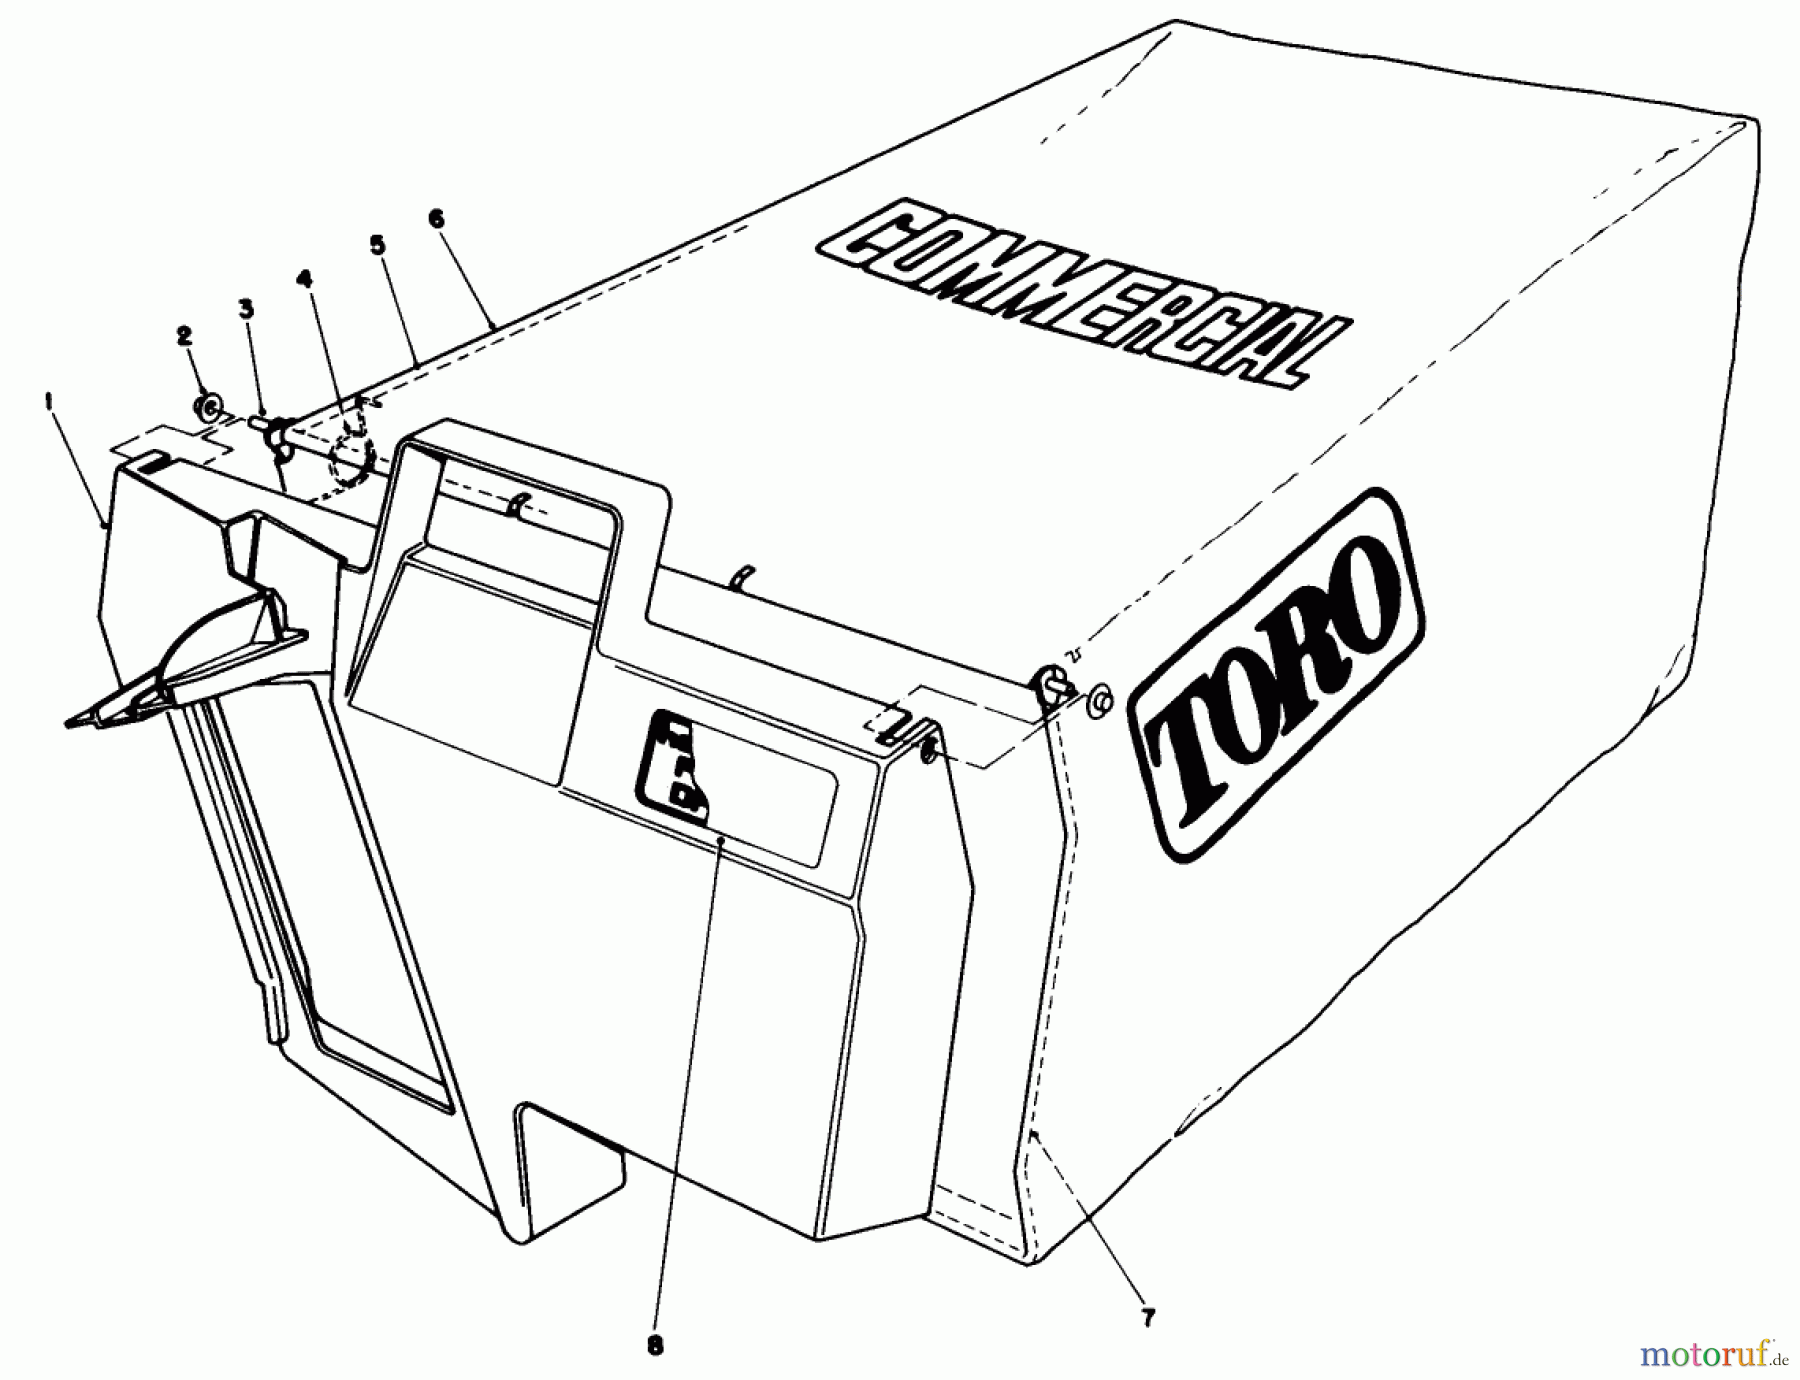  Toro Neu Mowers, Walk-Behind Seite 2 22035 - Toro Lawnmower, 1988 (8002990-8999999) GRASS BAG ASSEMBLY NO. 11-5609